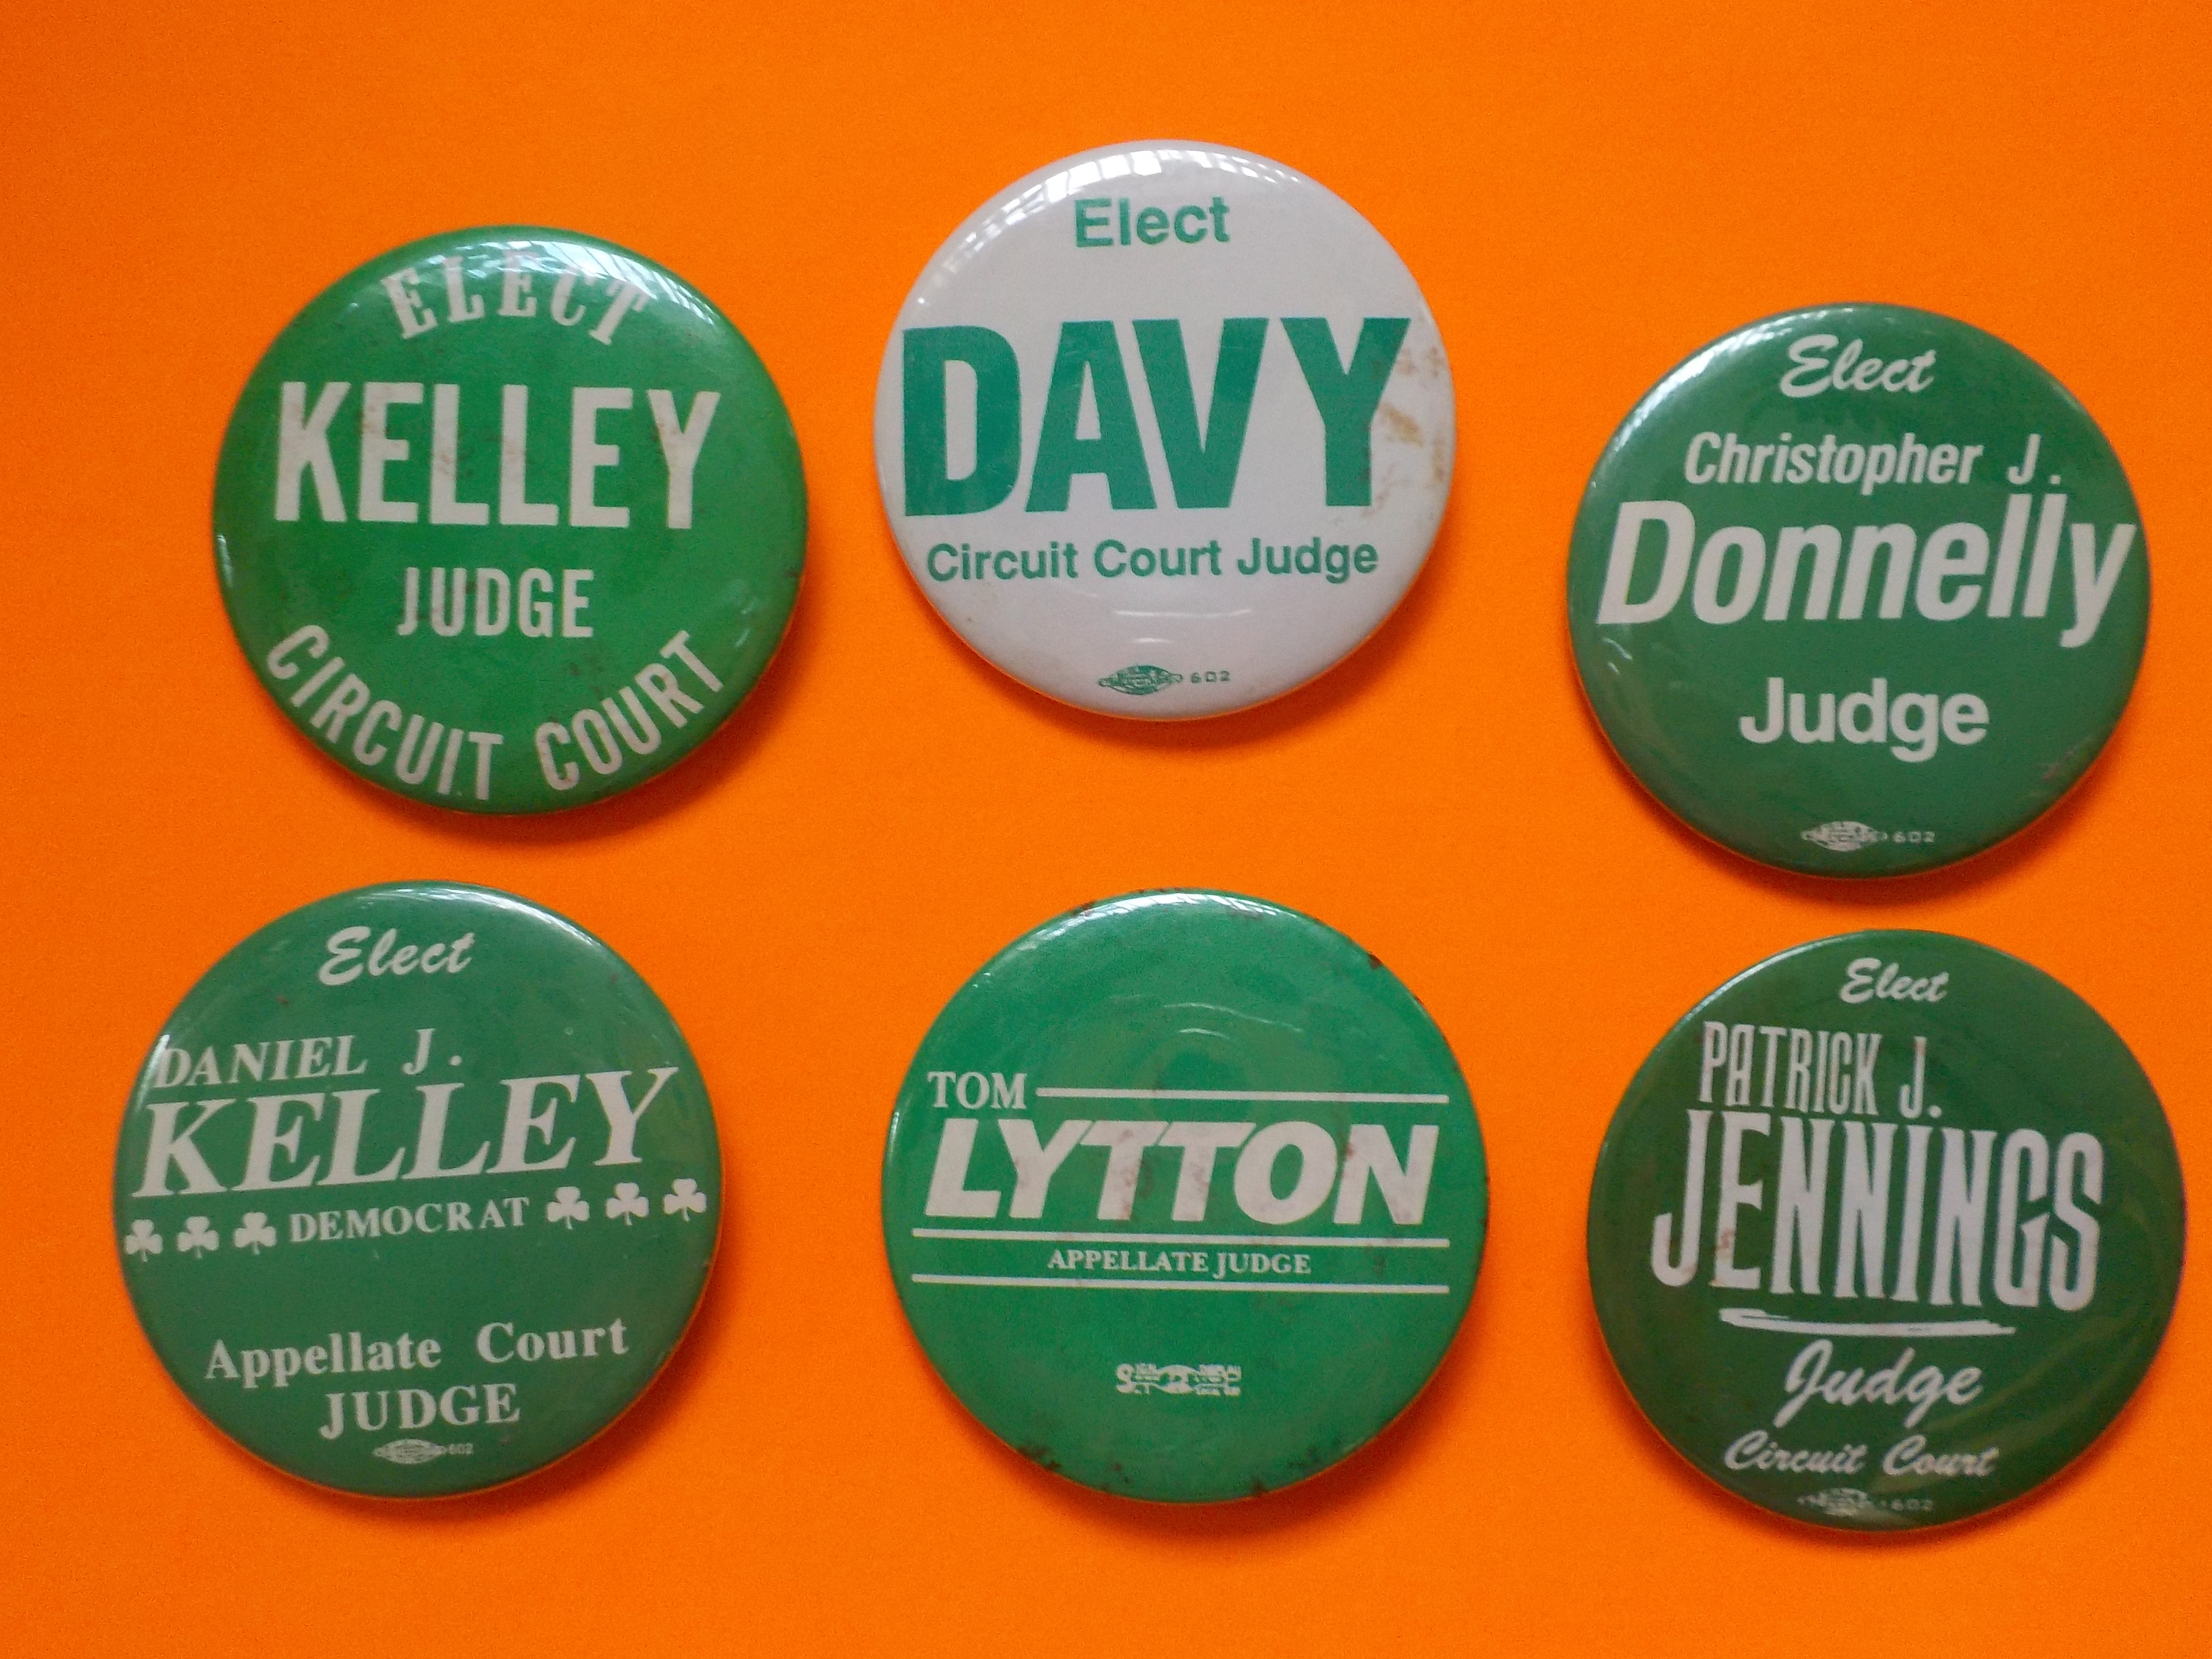 Green judges